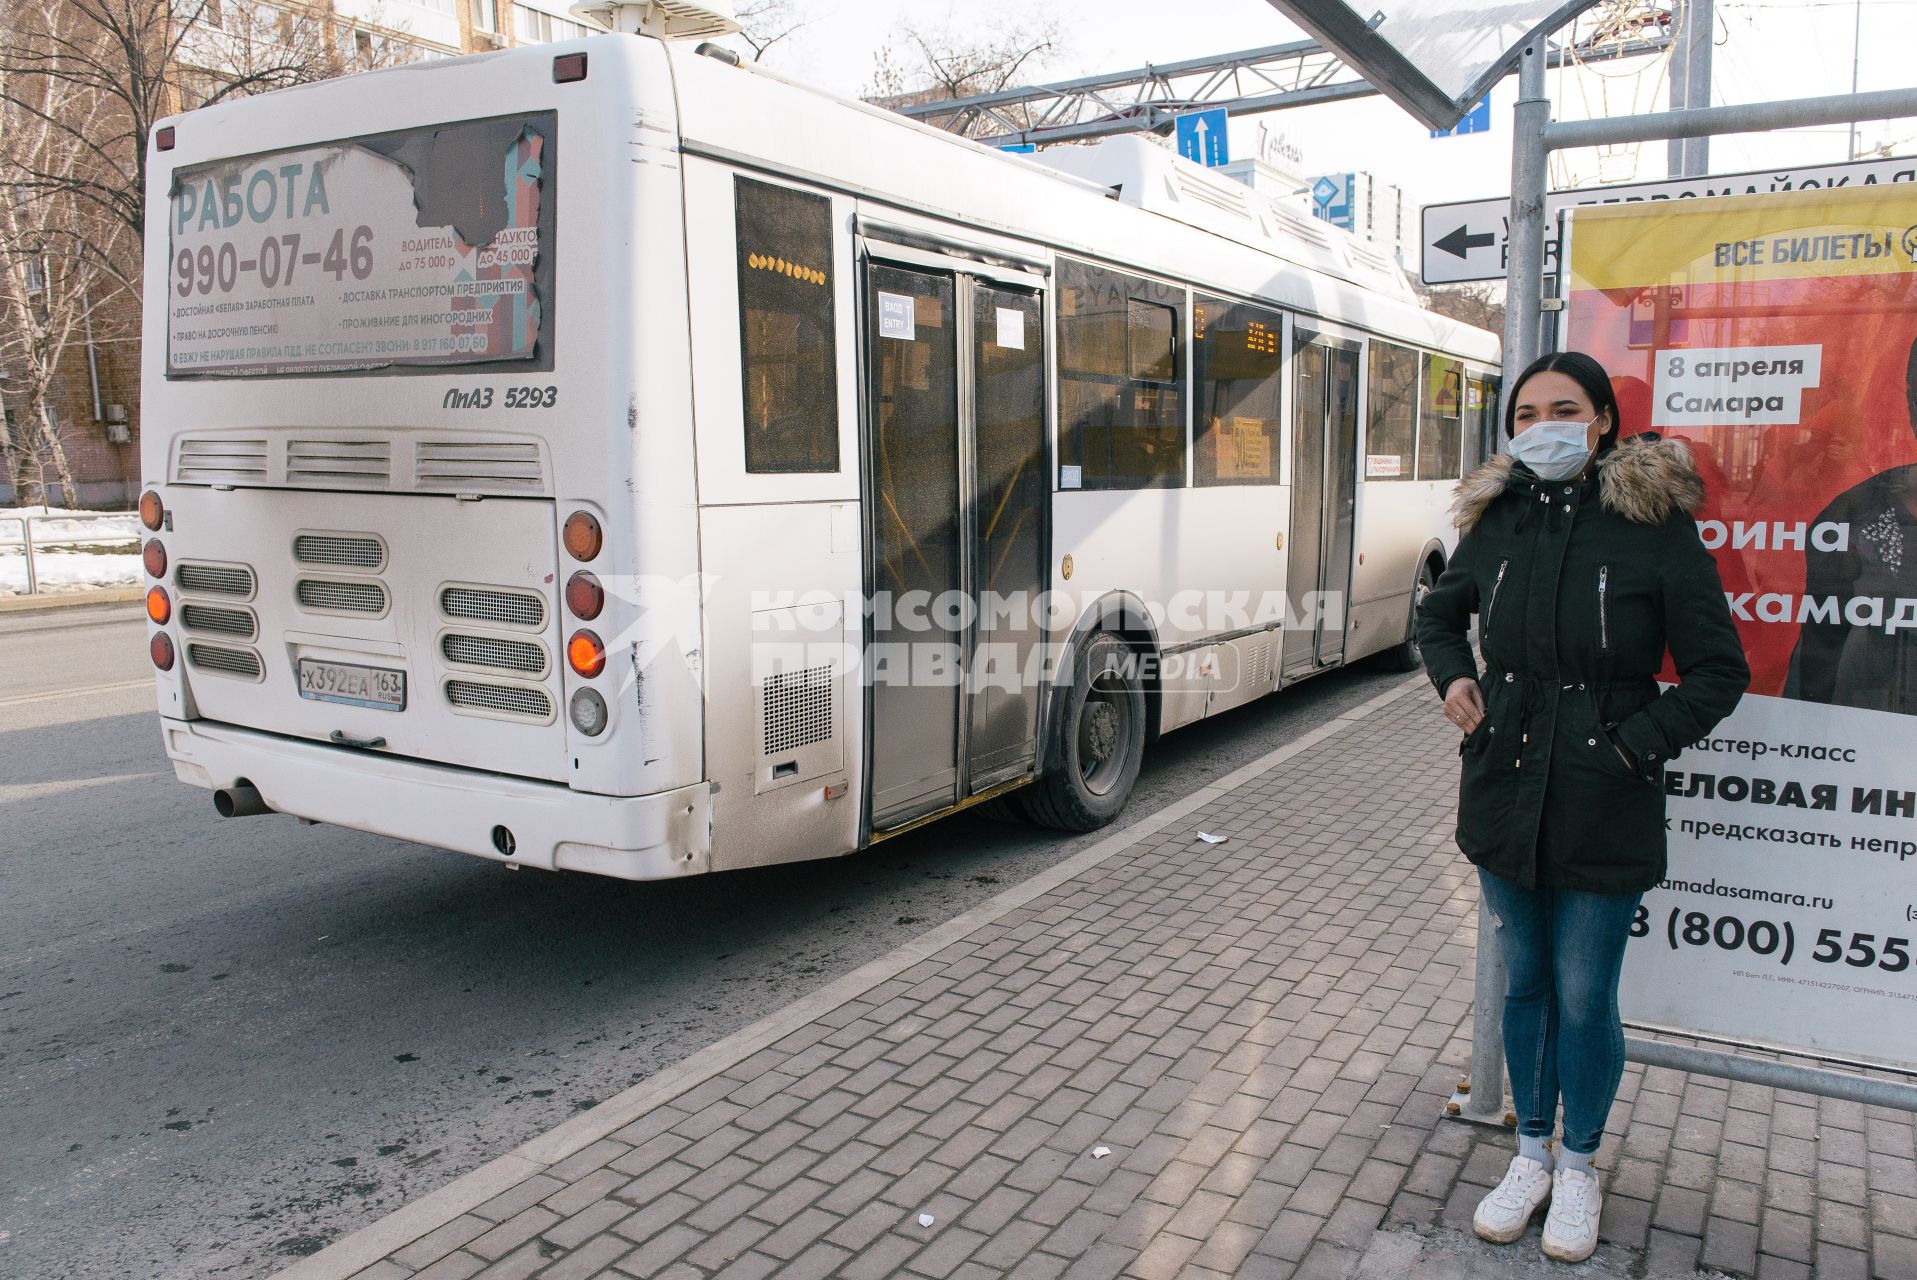 Самара. Девушка в медицинской маске на автобусной остановке.